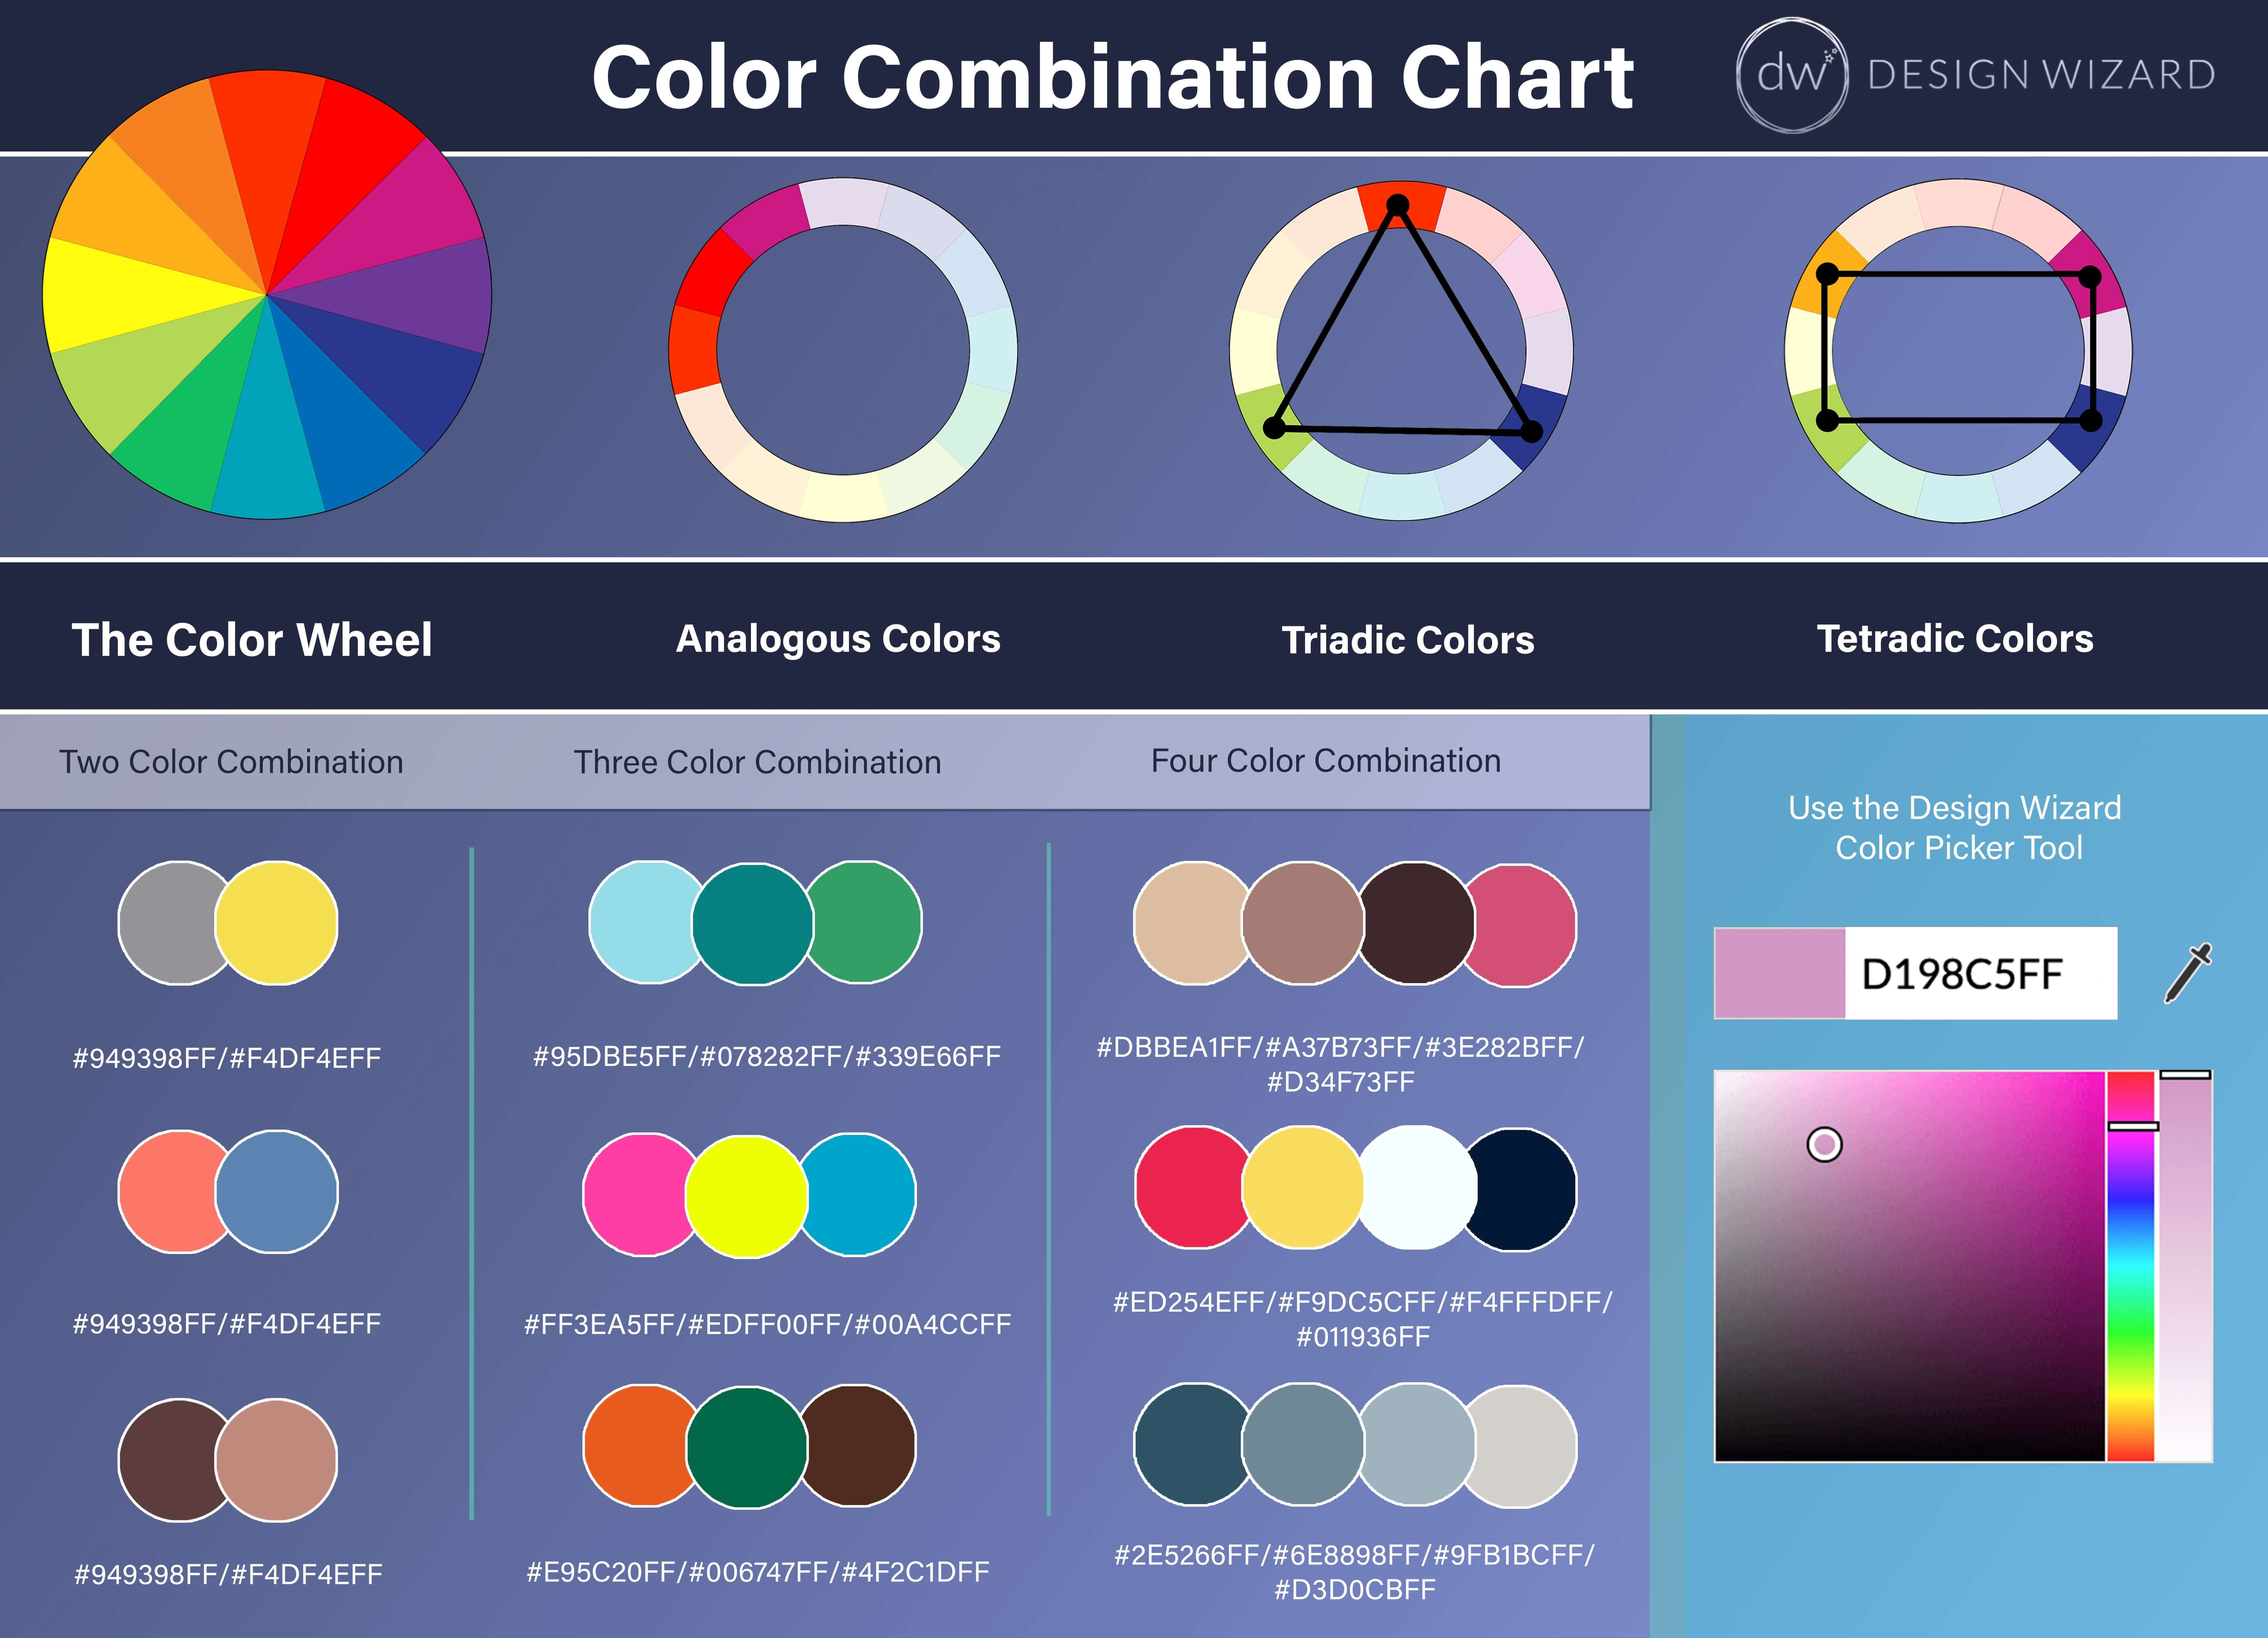 Tableau de combinaison de couleurs pour la référence de création de palette de couleurs - Pourquoi choisir une palette de couleurs efficace est important pour vous - Image